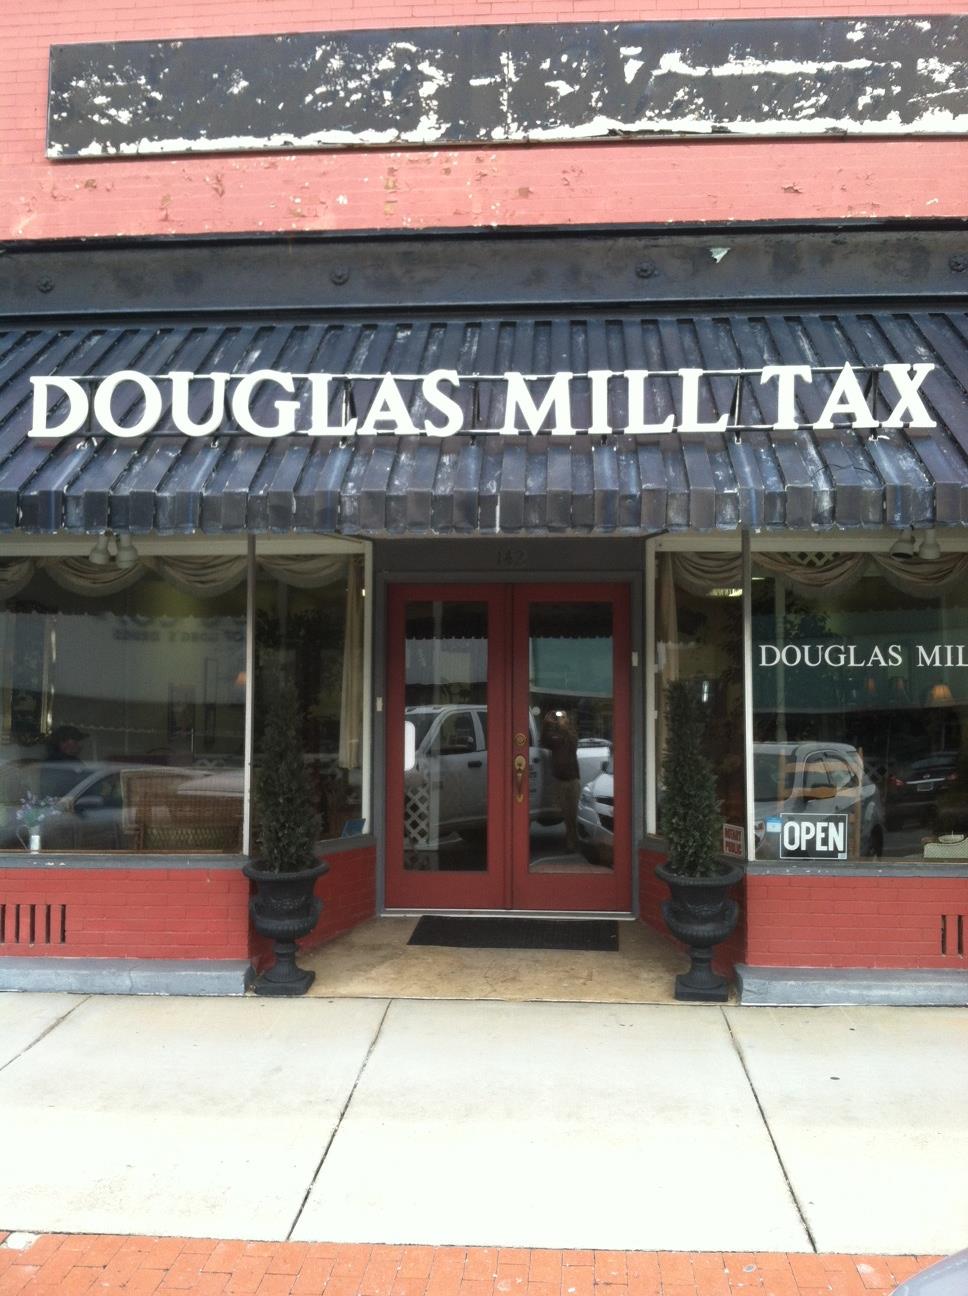 Douglas Mill Tax